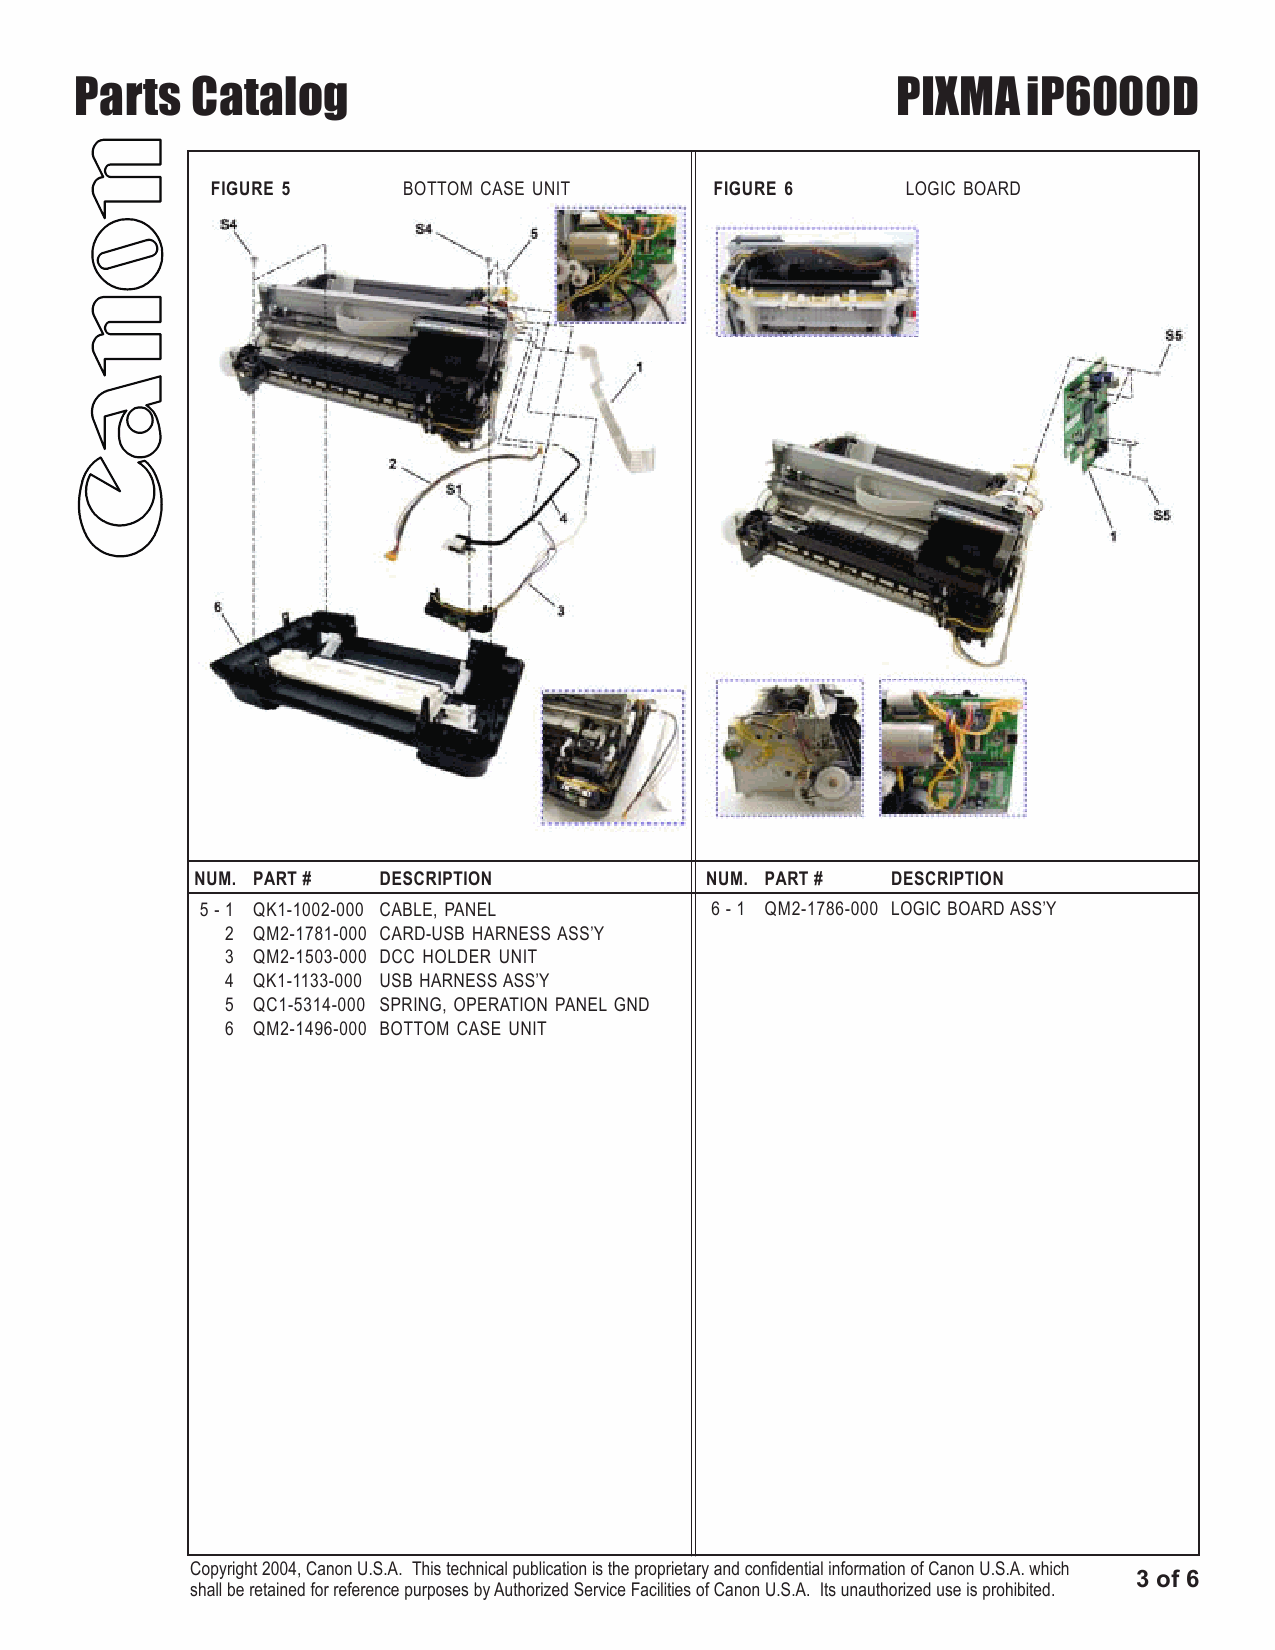 Canon PIXMA iP6000D Parts Catalog Manual-4